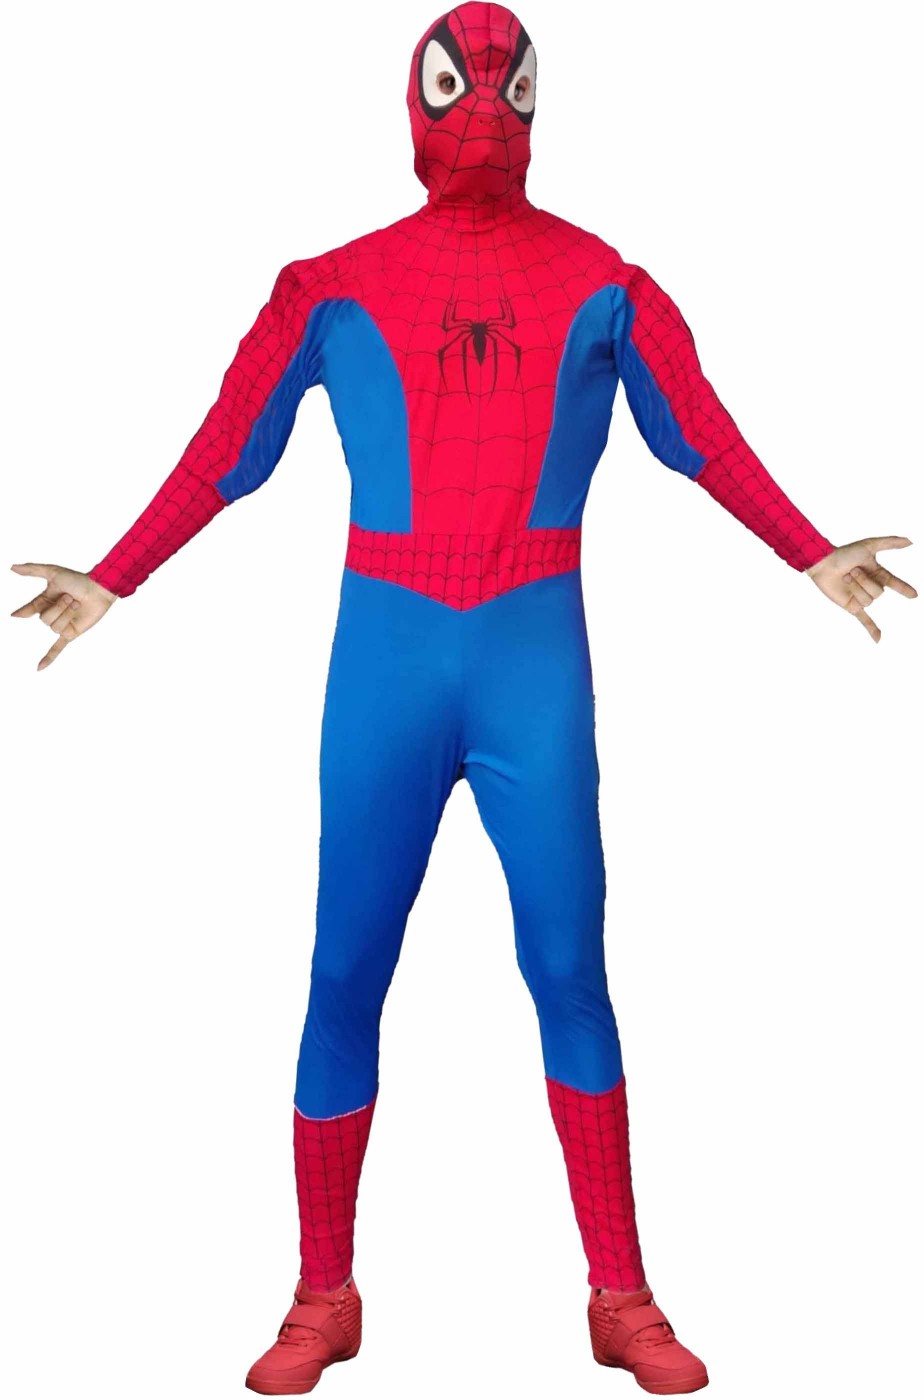 Costume spiderman uomo ragno adulto rosso e blu con maschera